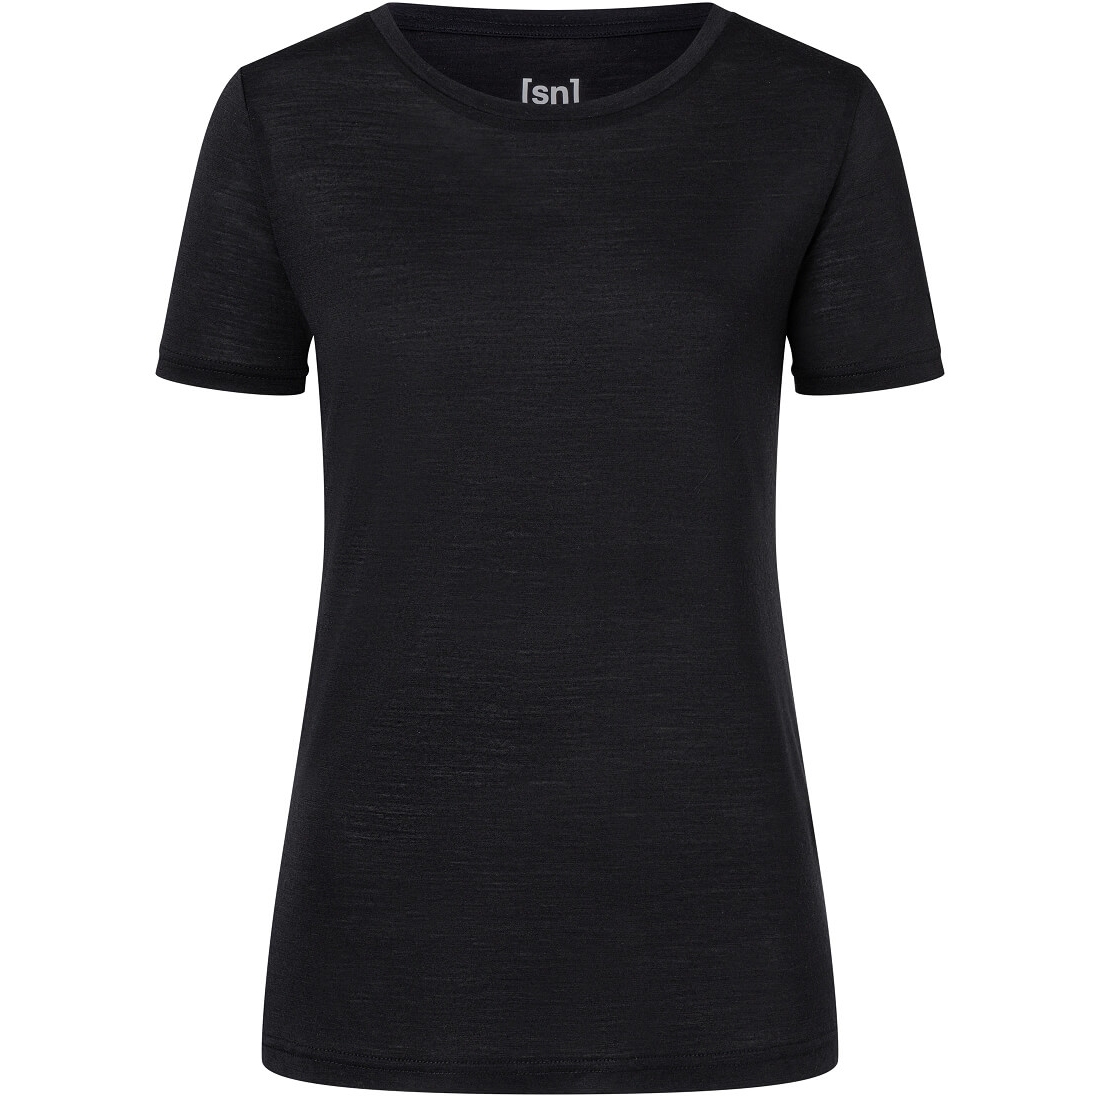 Produktbild von SUPER.NATURAL The Essential T-Shirt Damen - Jet Black